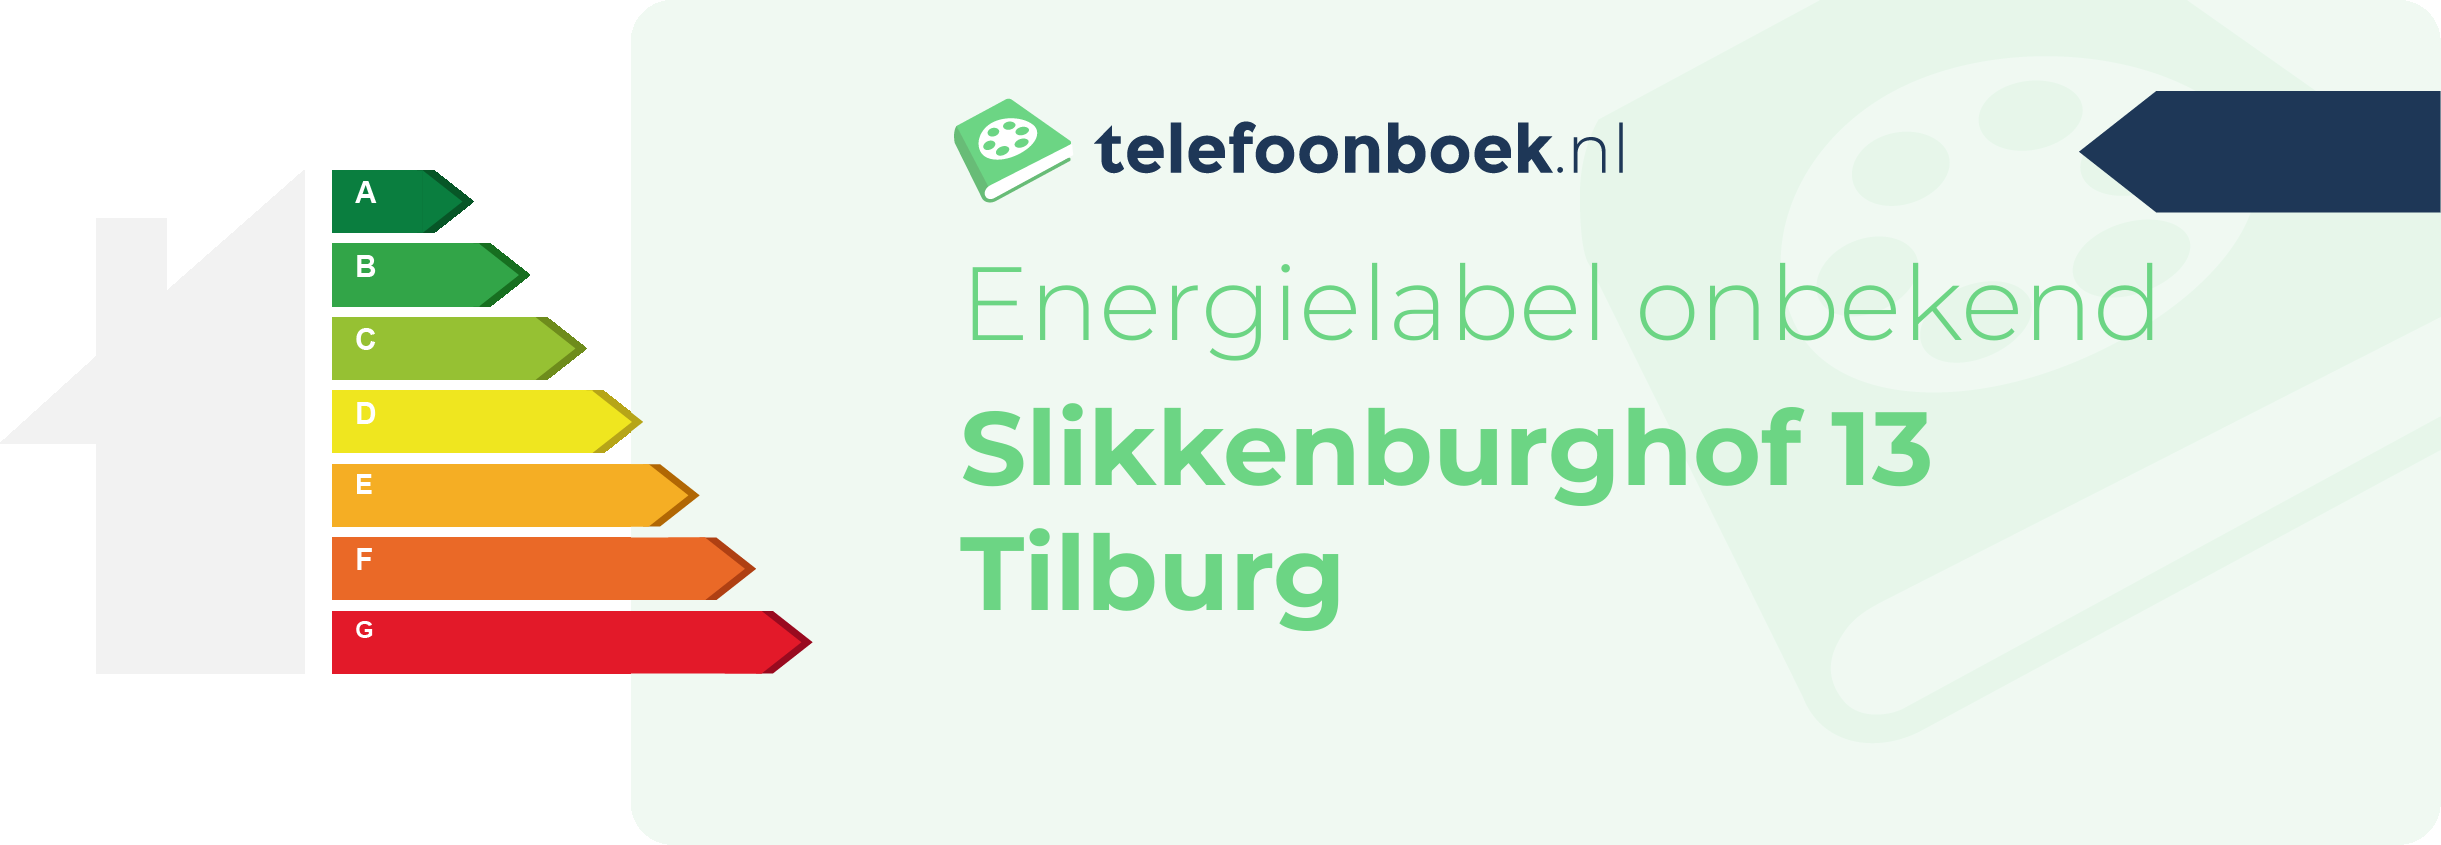 Energielabel Slikkenburghof 13 Tilburg